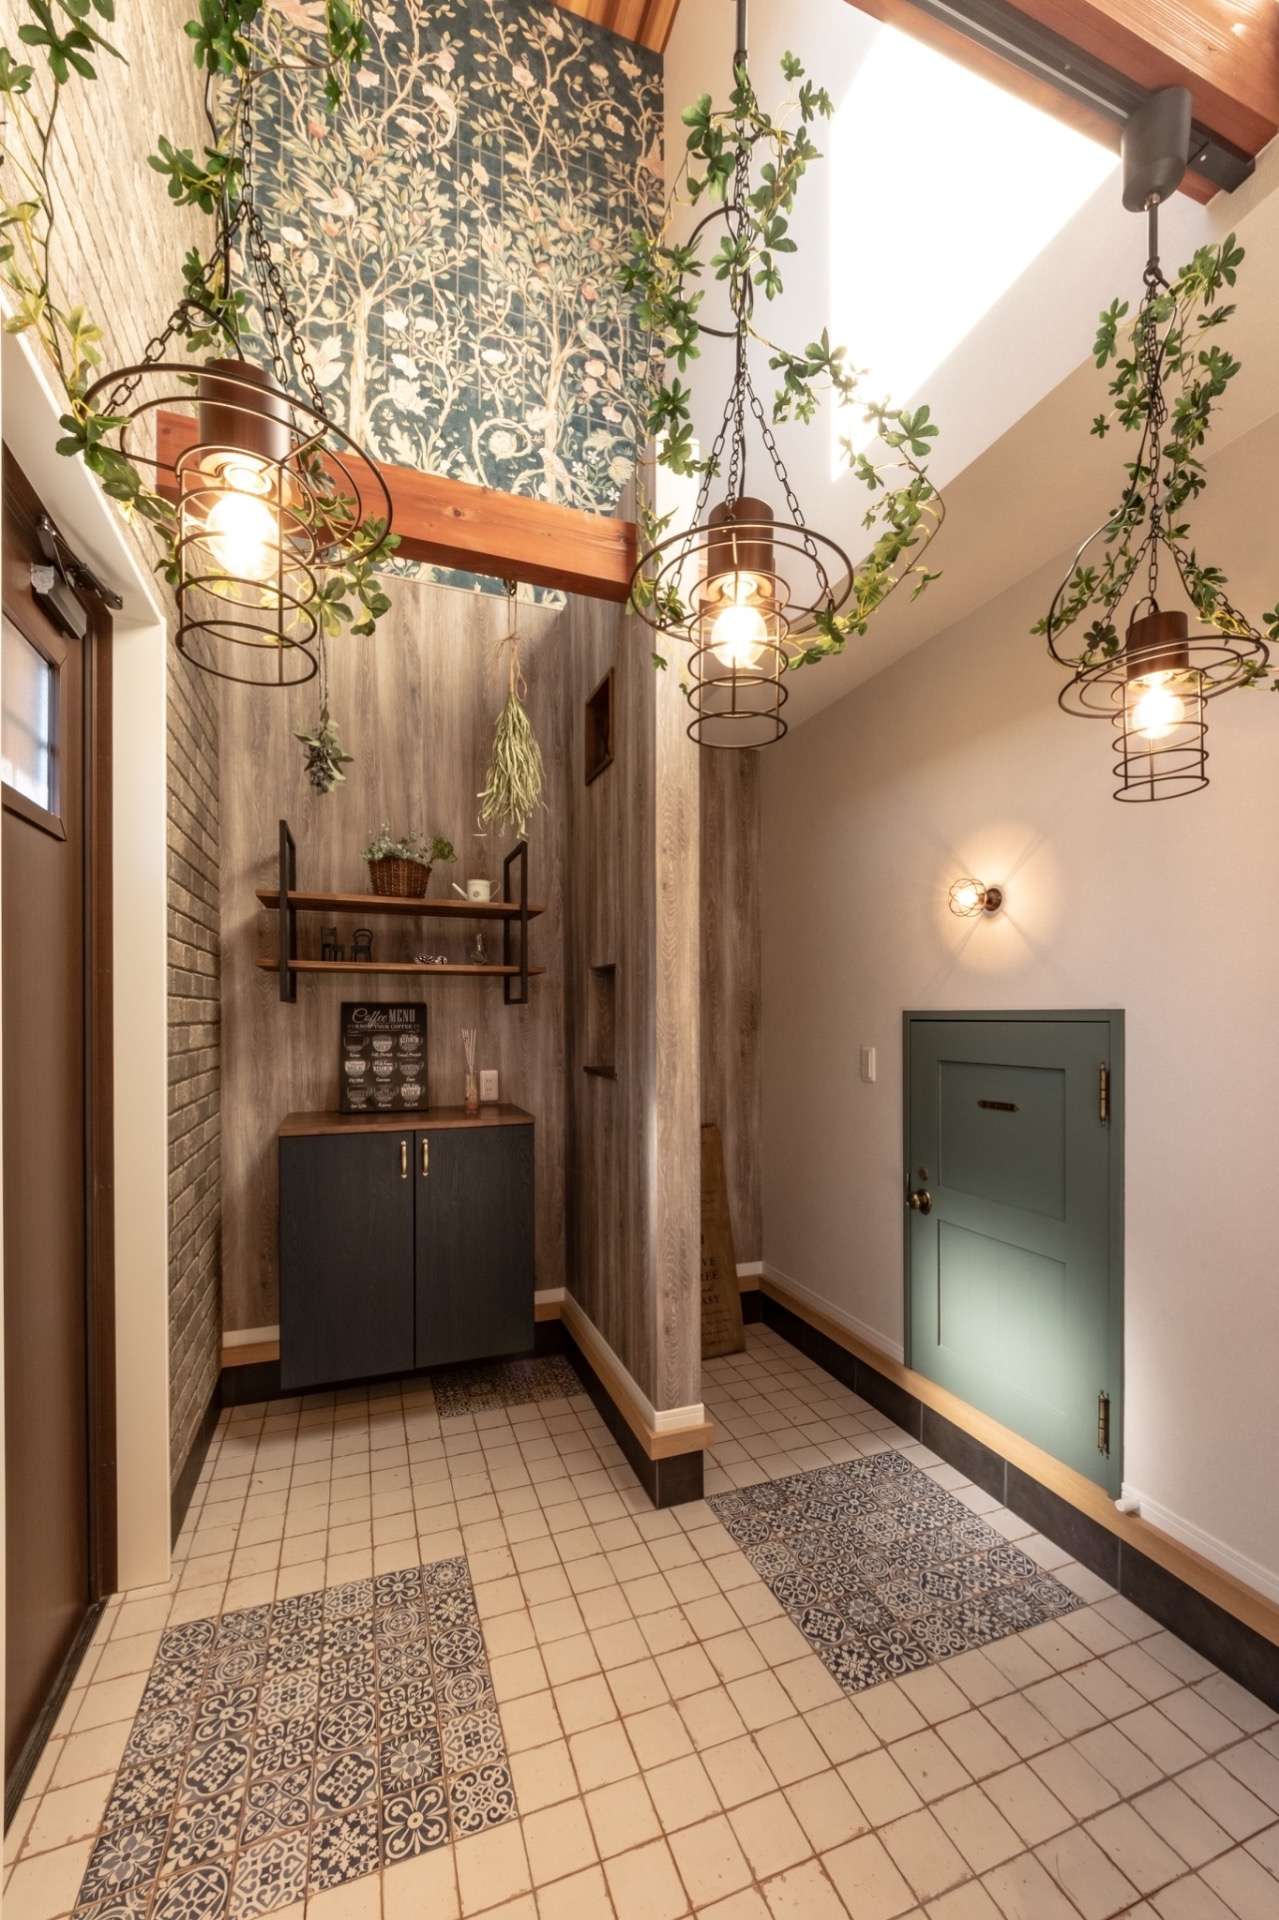 【グリーンを”吊るす“自然を楽しむインテリア💡】宮崎市で新築・リノベーション| mikiデザインハウス